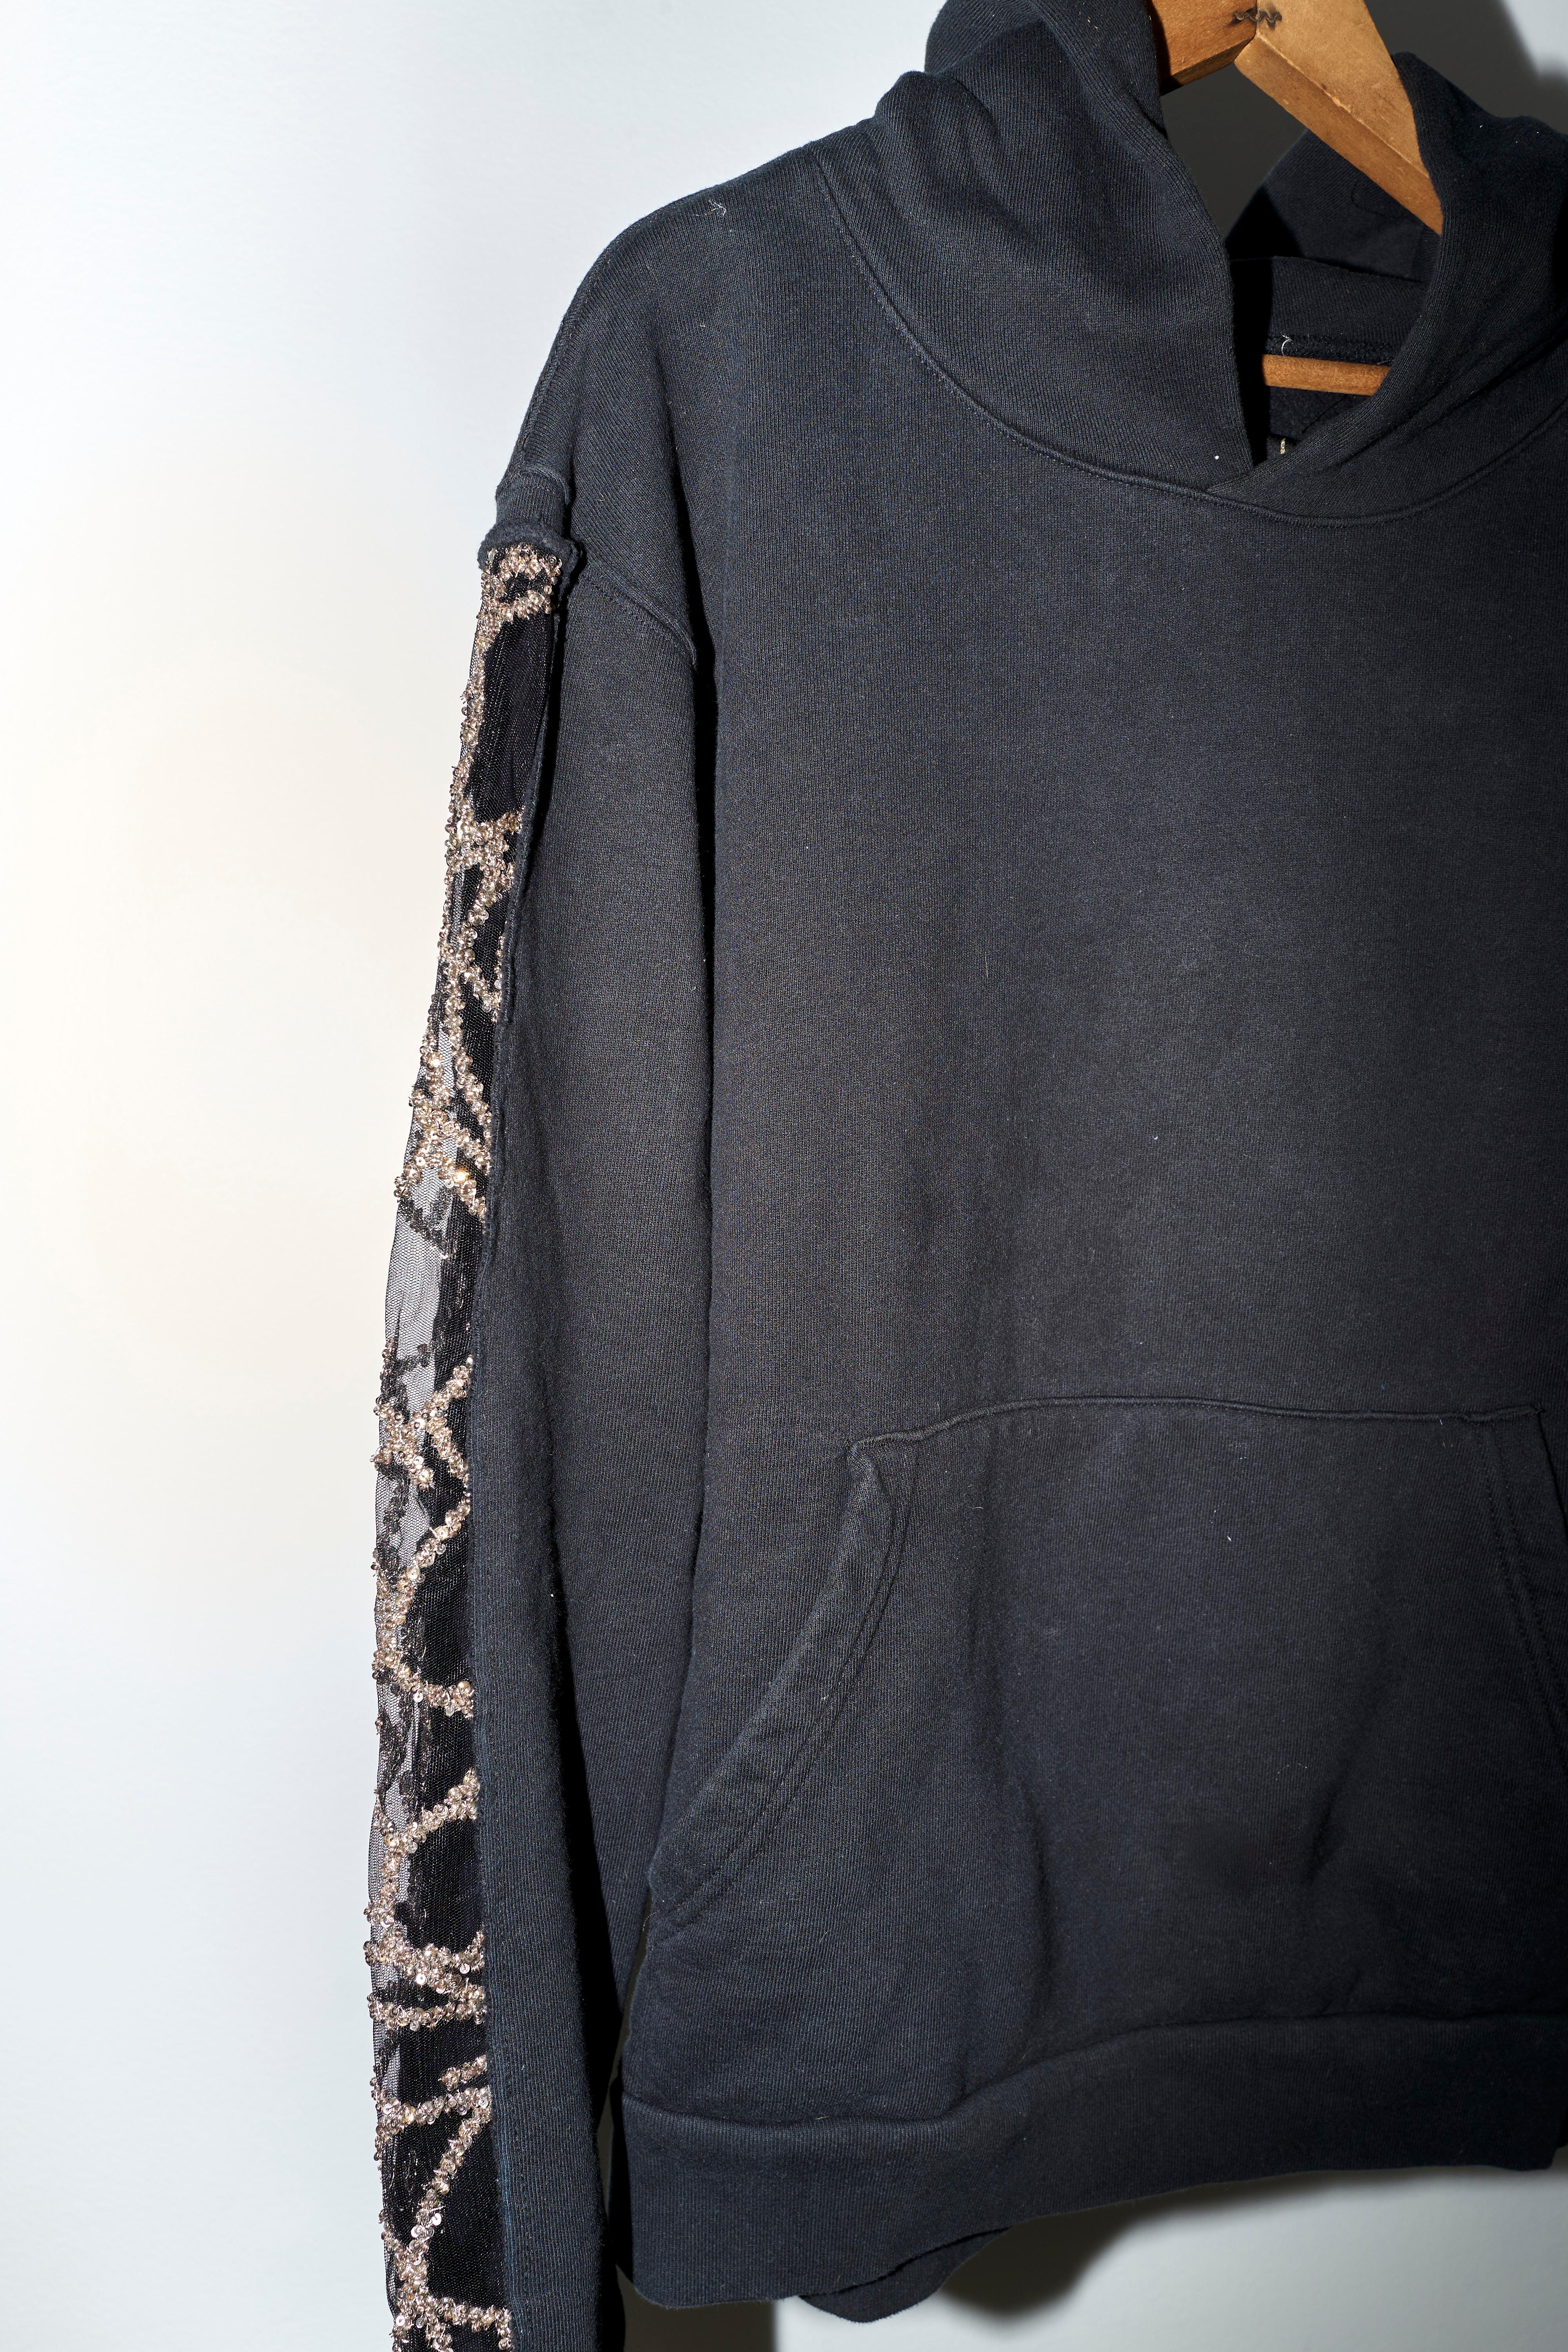 Black Hoodie Sweatshirt Transparent Sheer Mesh Chrystal Embroidery J Dauphin 3